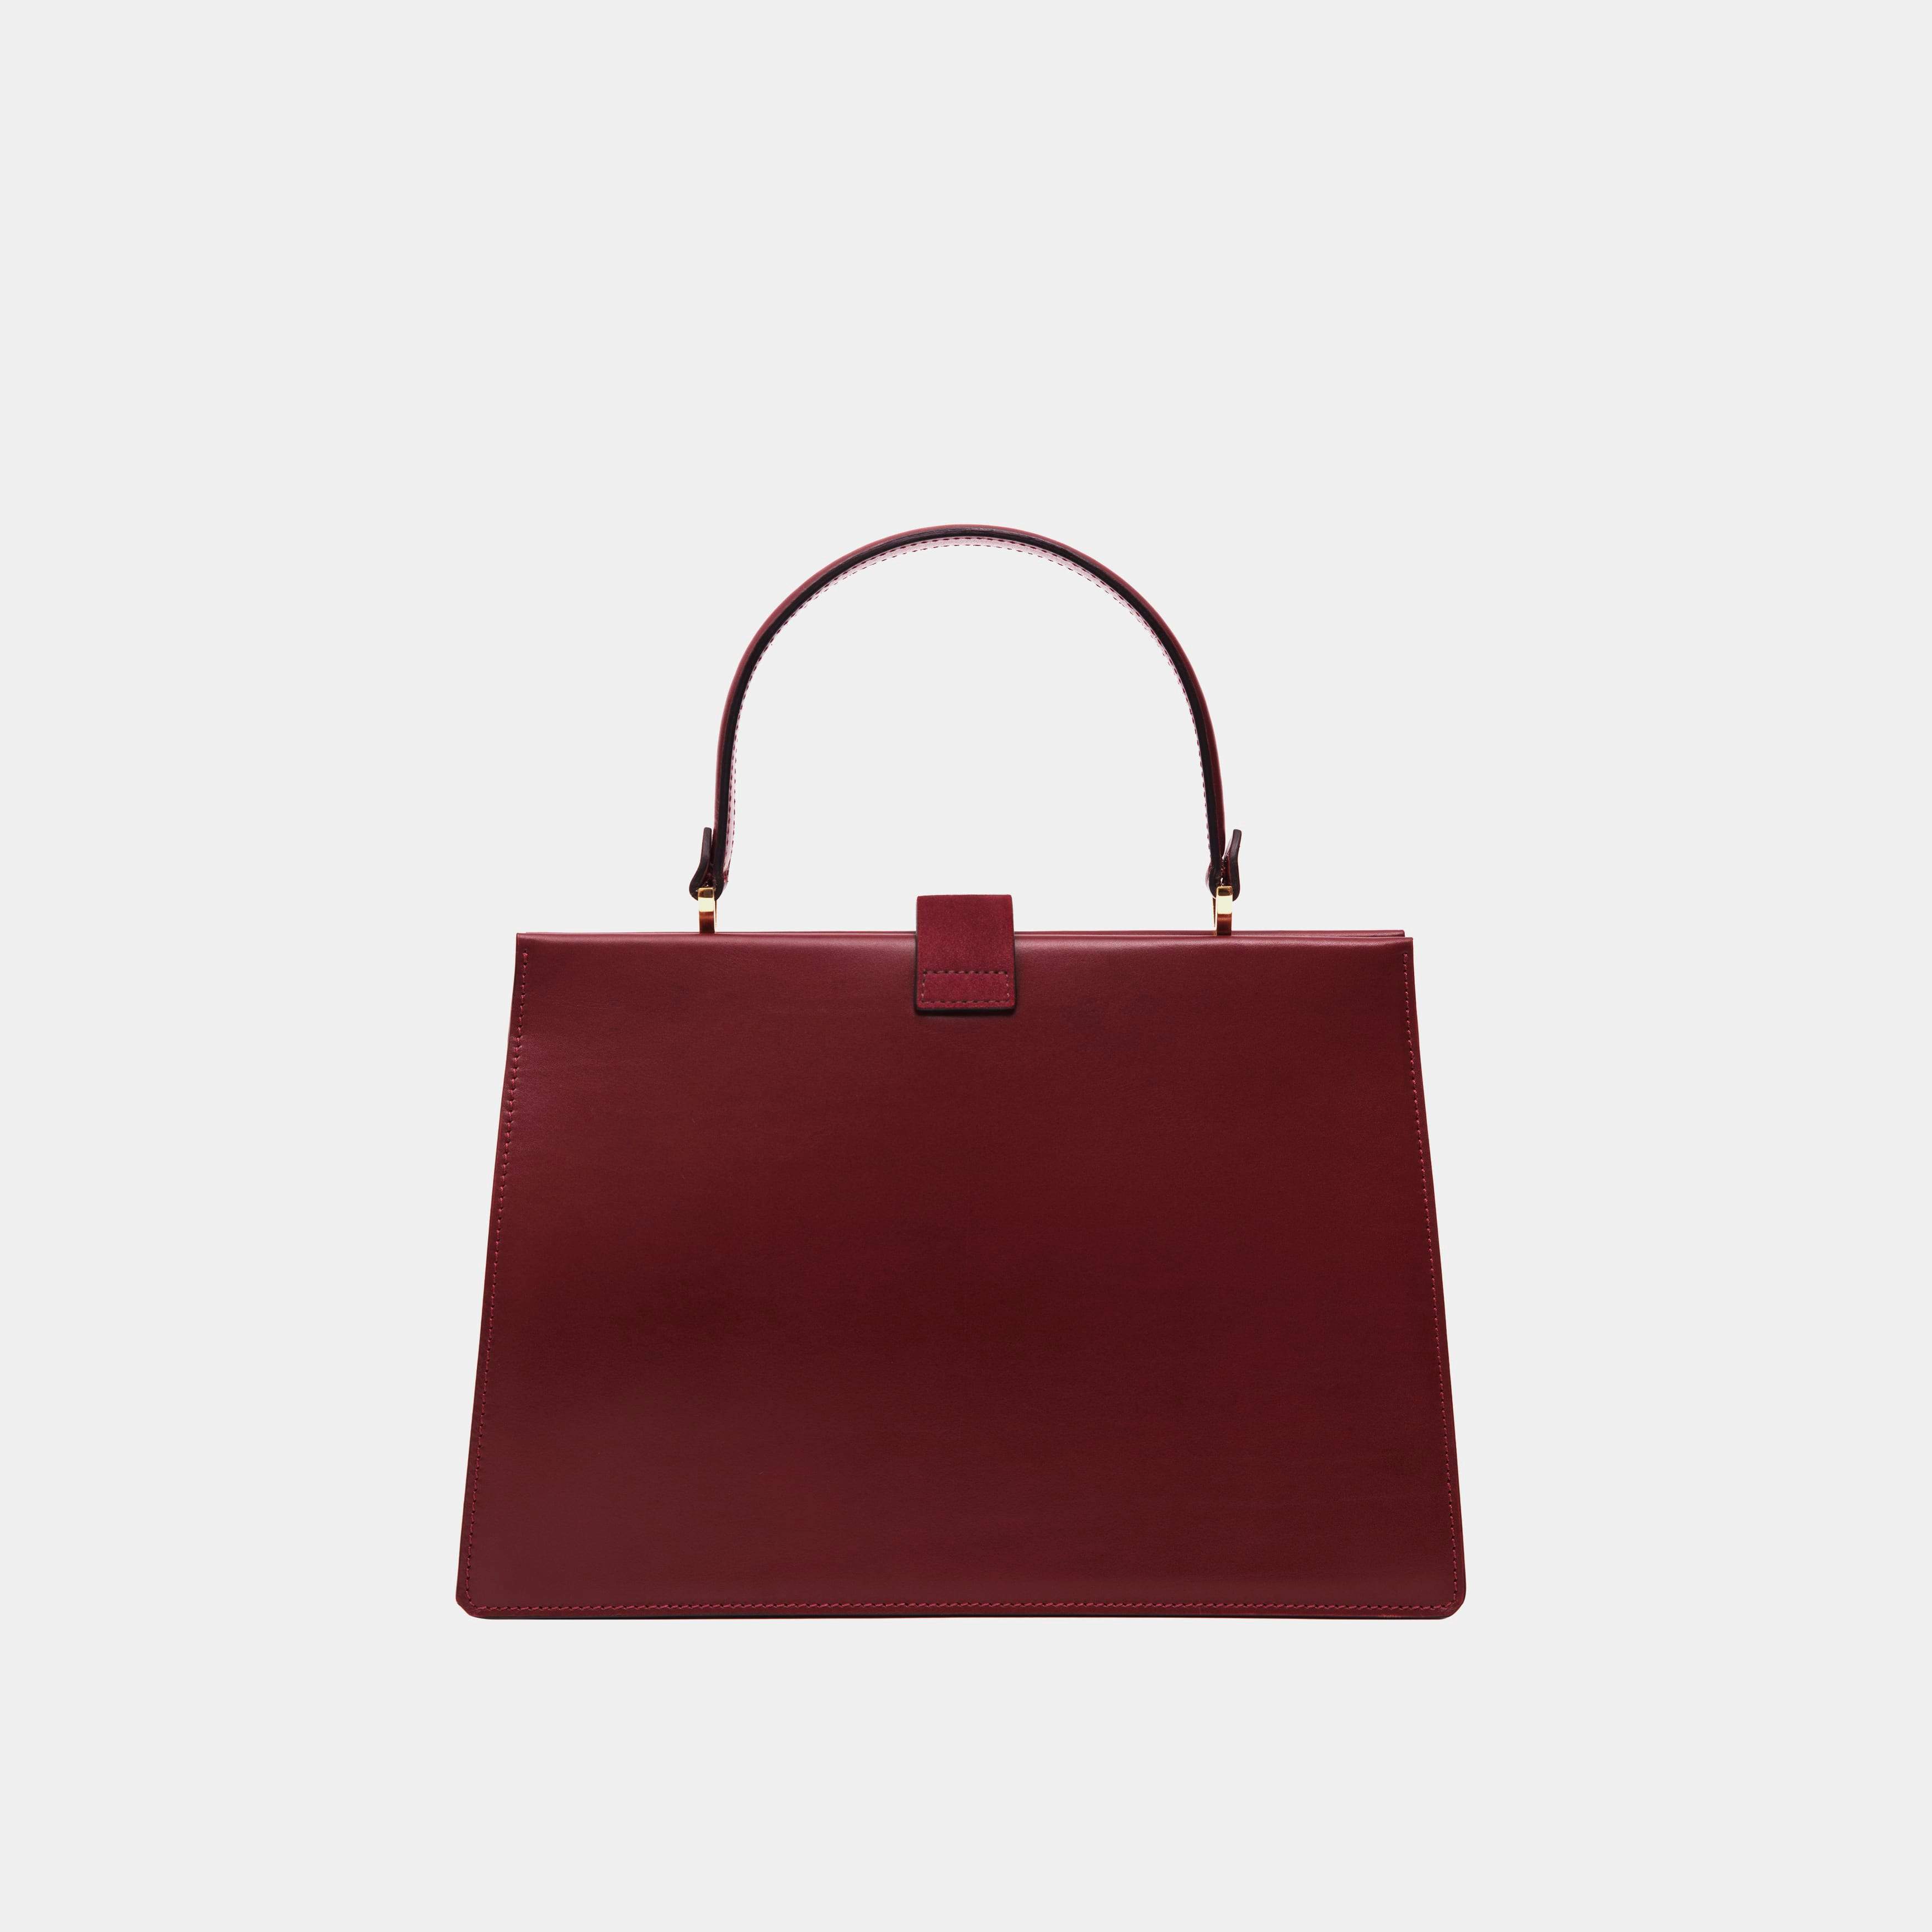 Le sac Elegant - Léo et Violette #burgundy